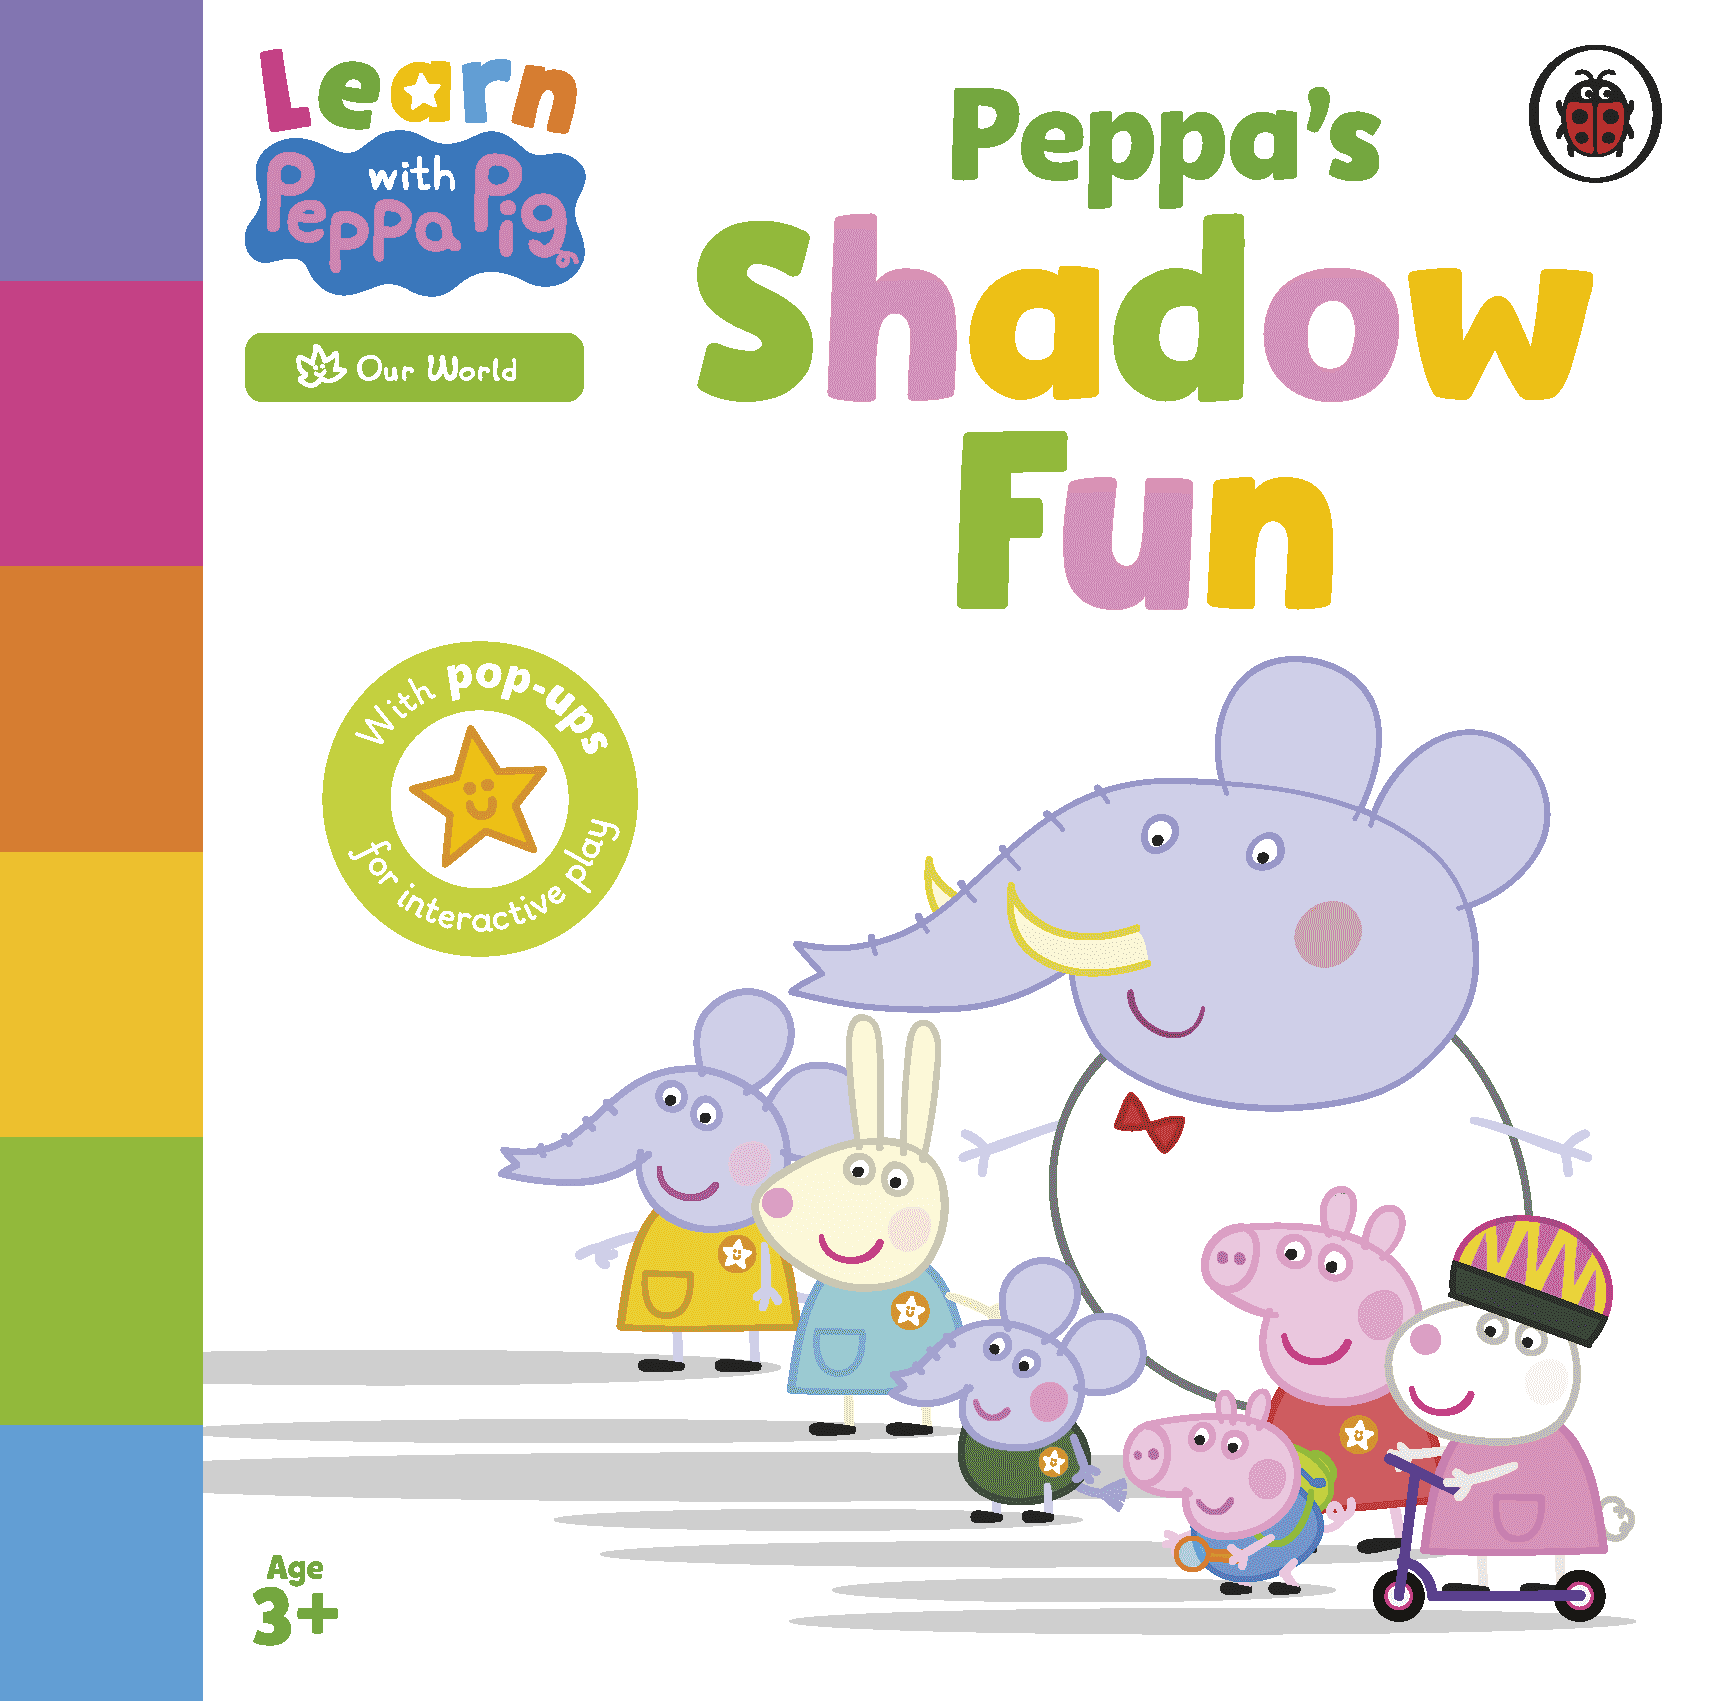 Peppa’s Shadow Fun